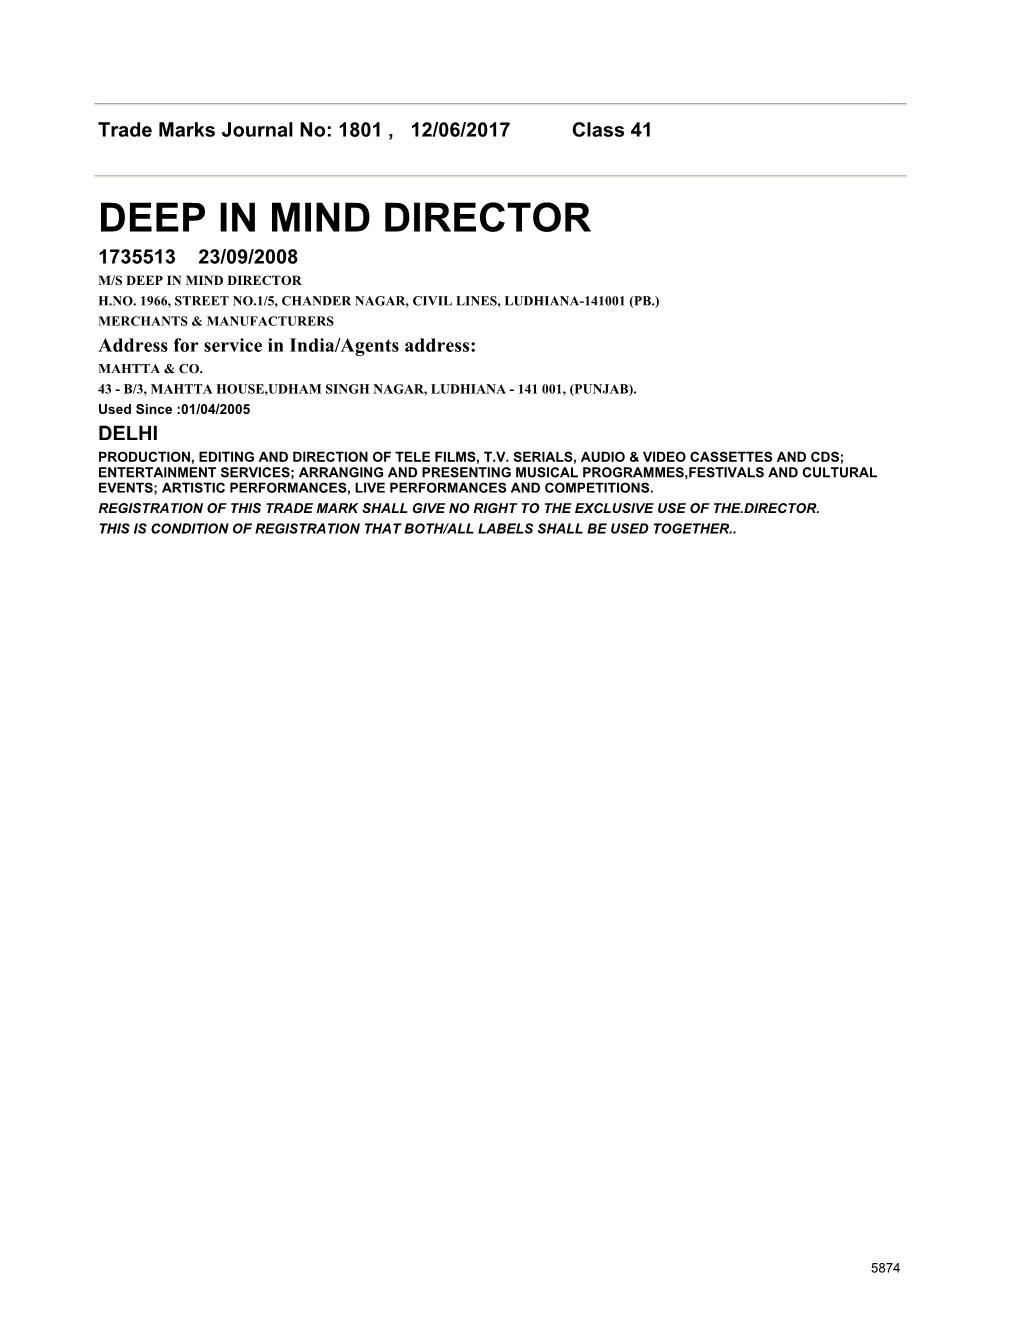 Deep in Mind Director 1735513 23/09/2008 M/S Deep in Mind Director H.No